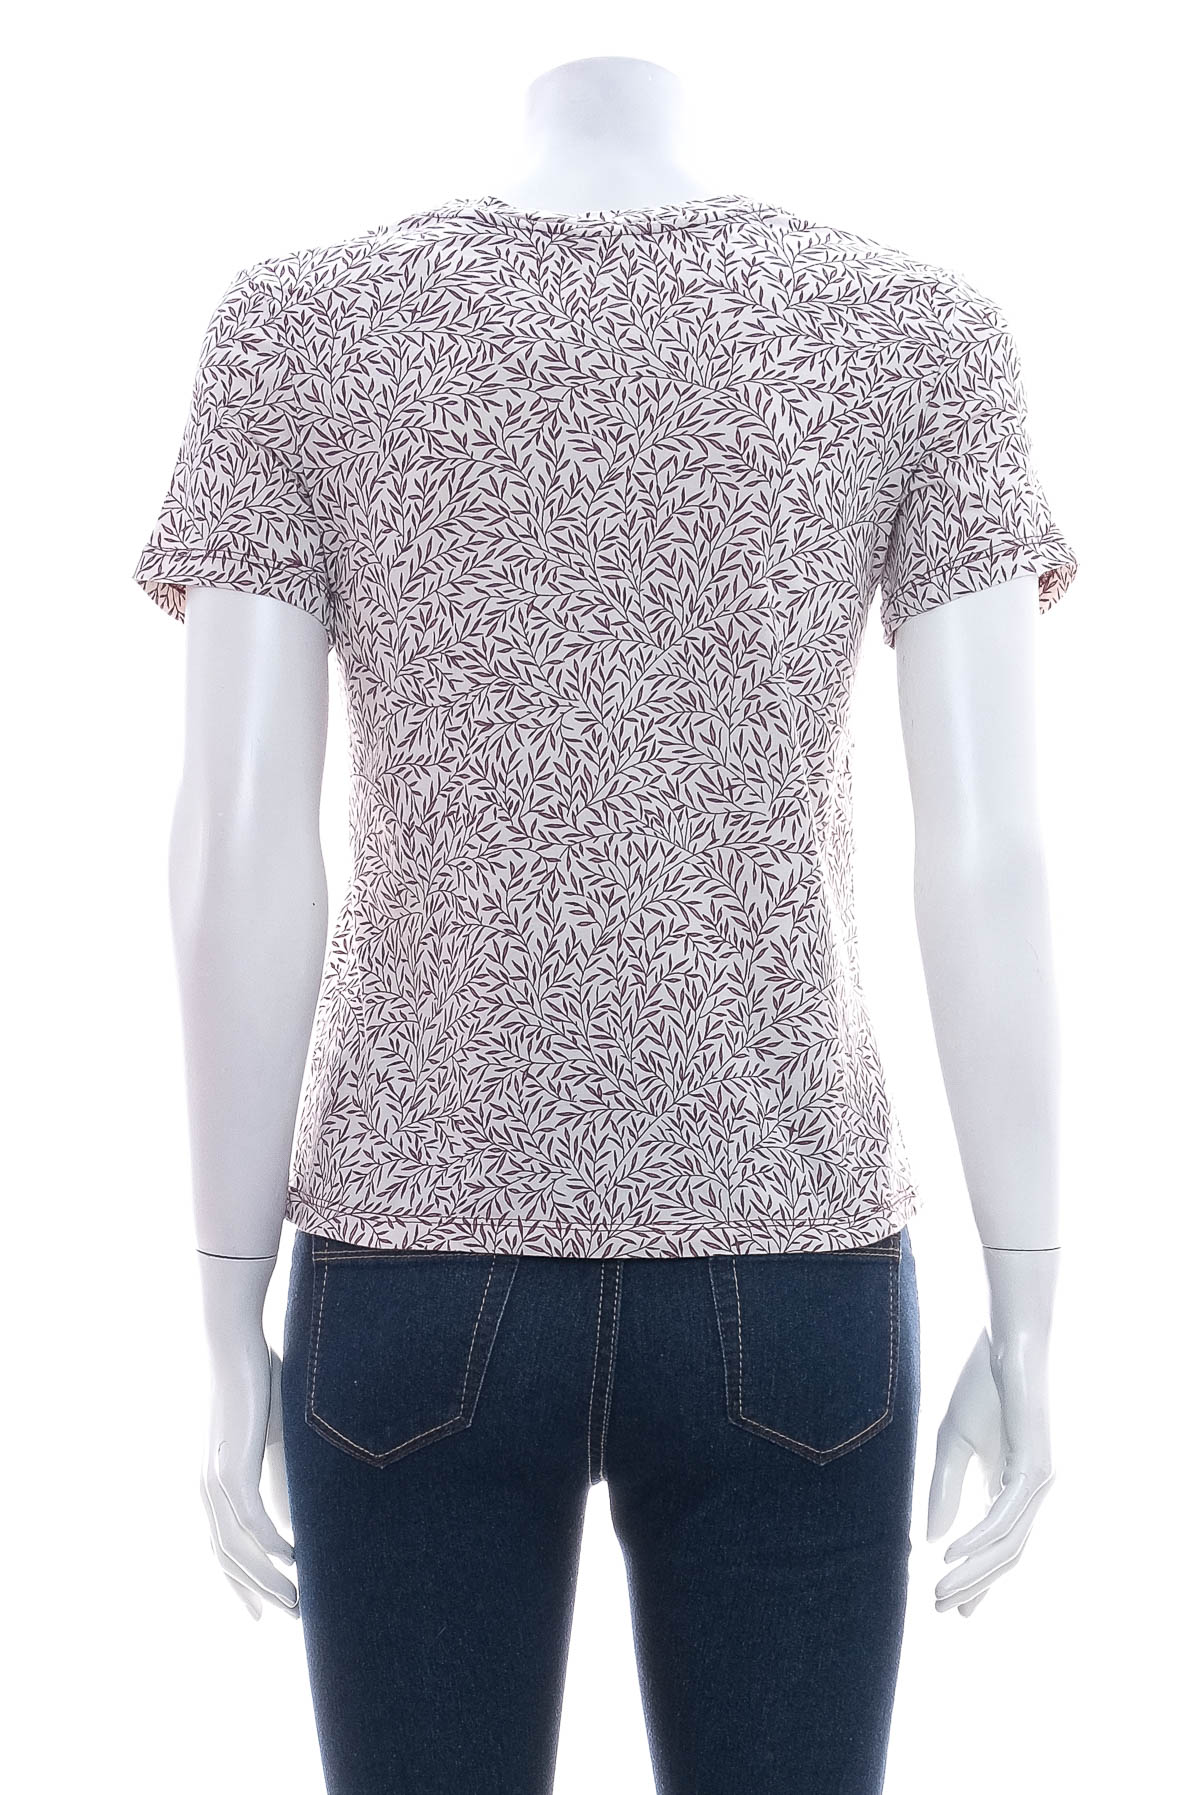 Γυναικεία μπλούζα - MORRIS & Co x H&M - 1